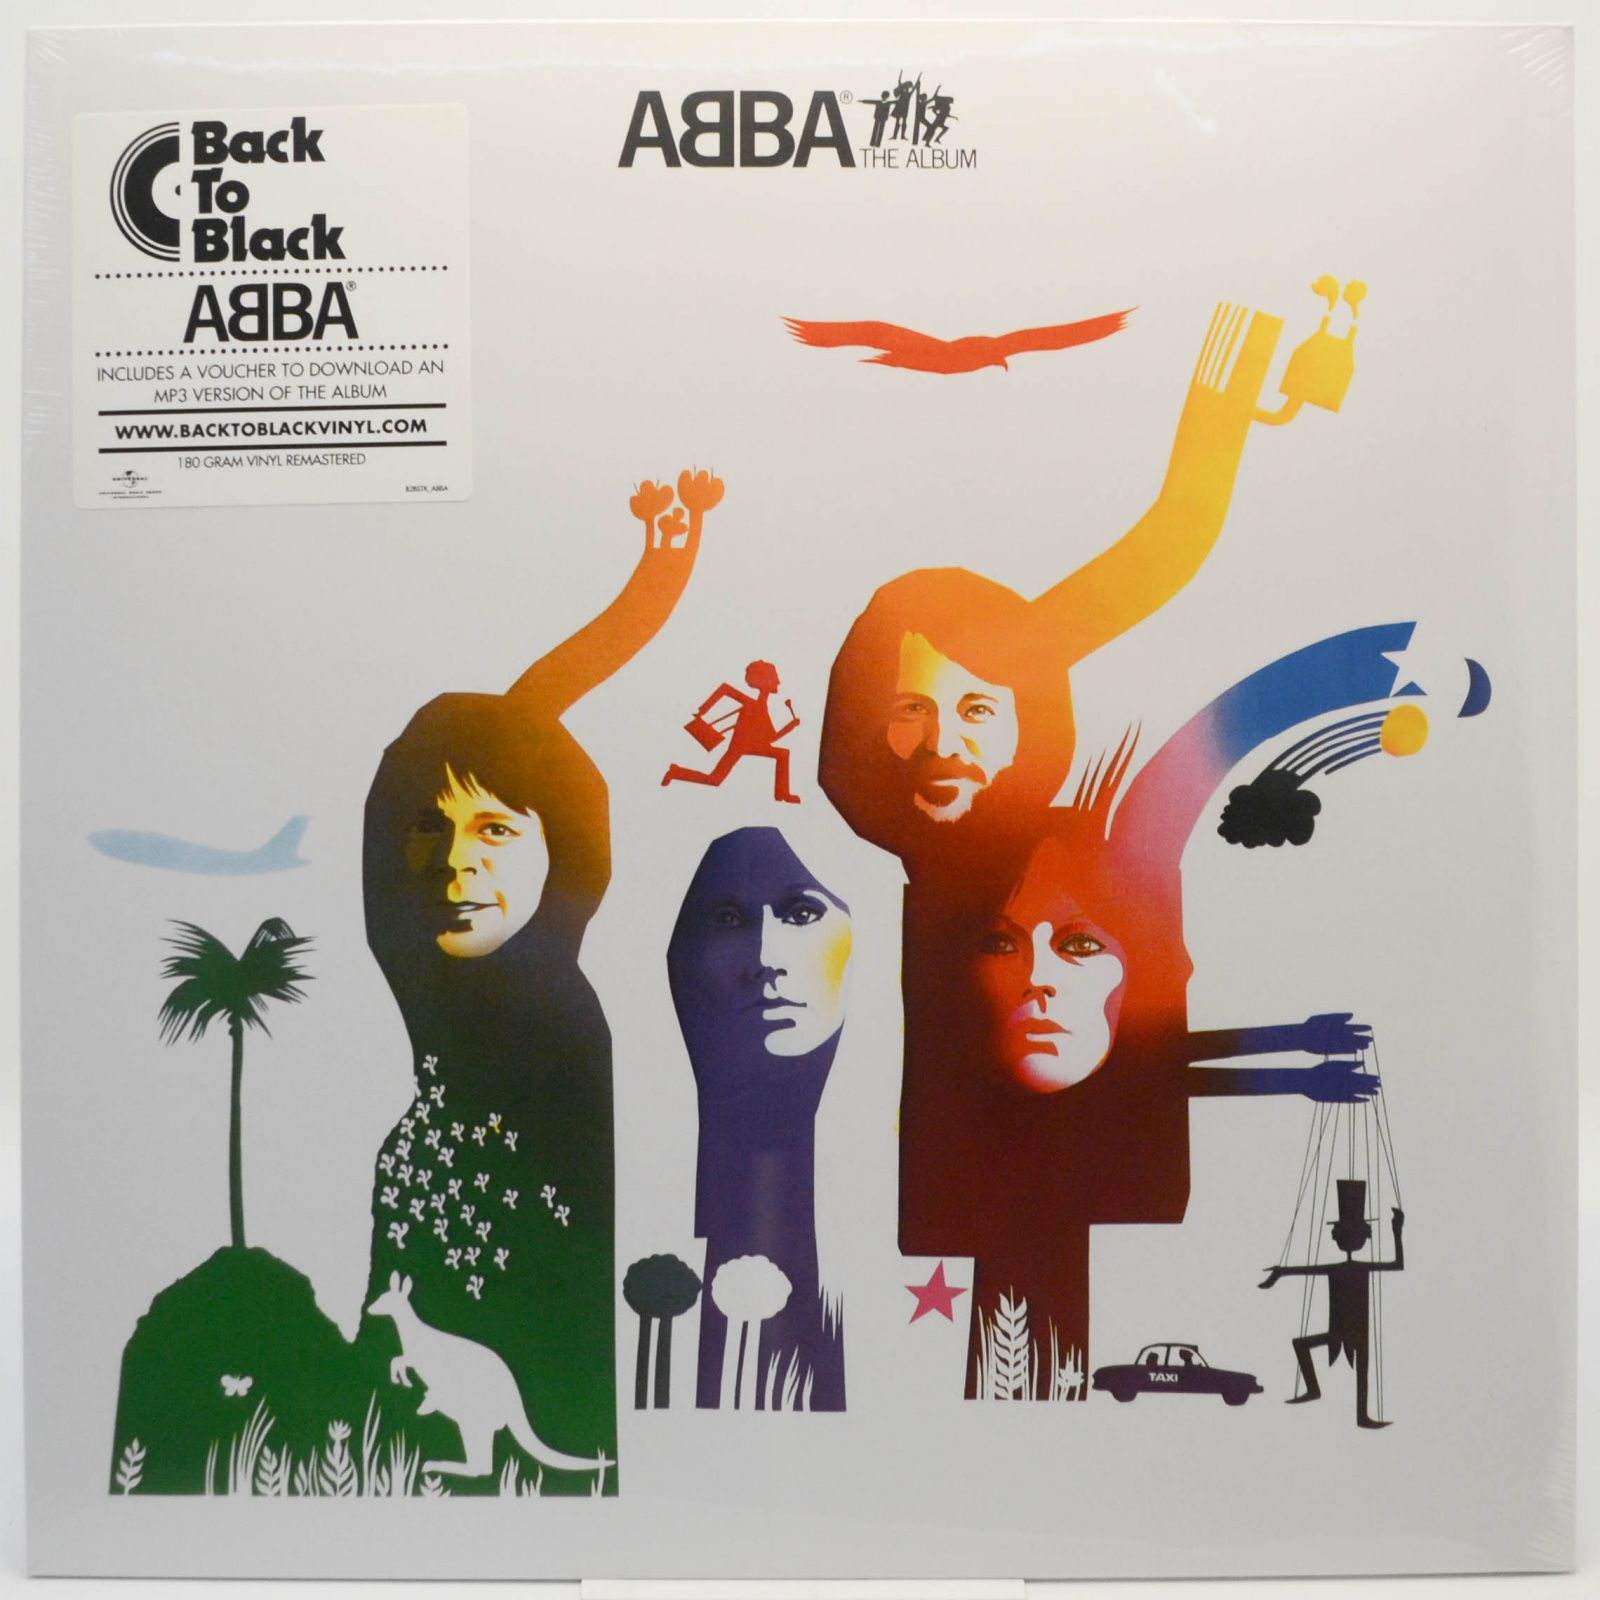 ABBA — The Album, 2011